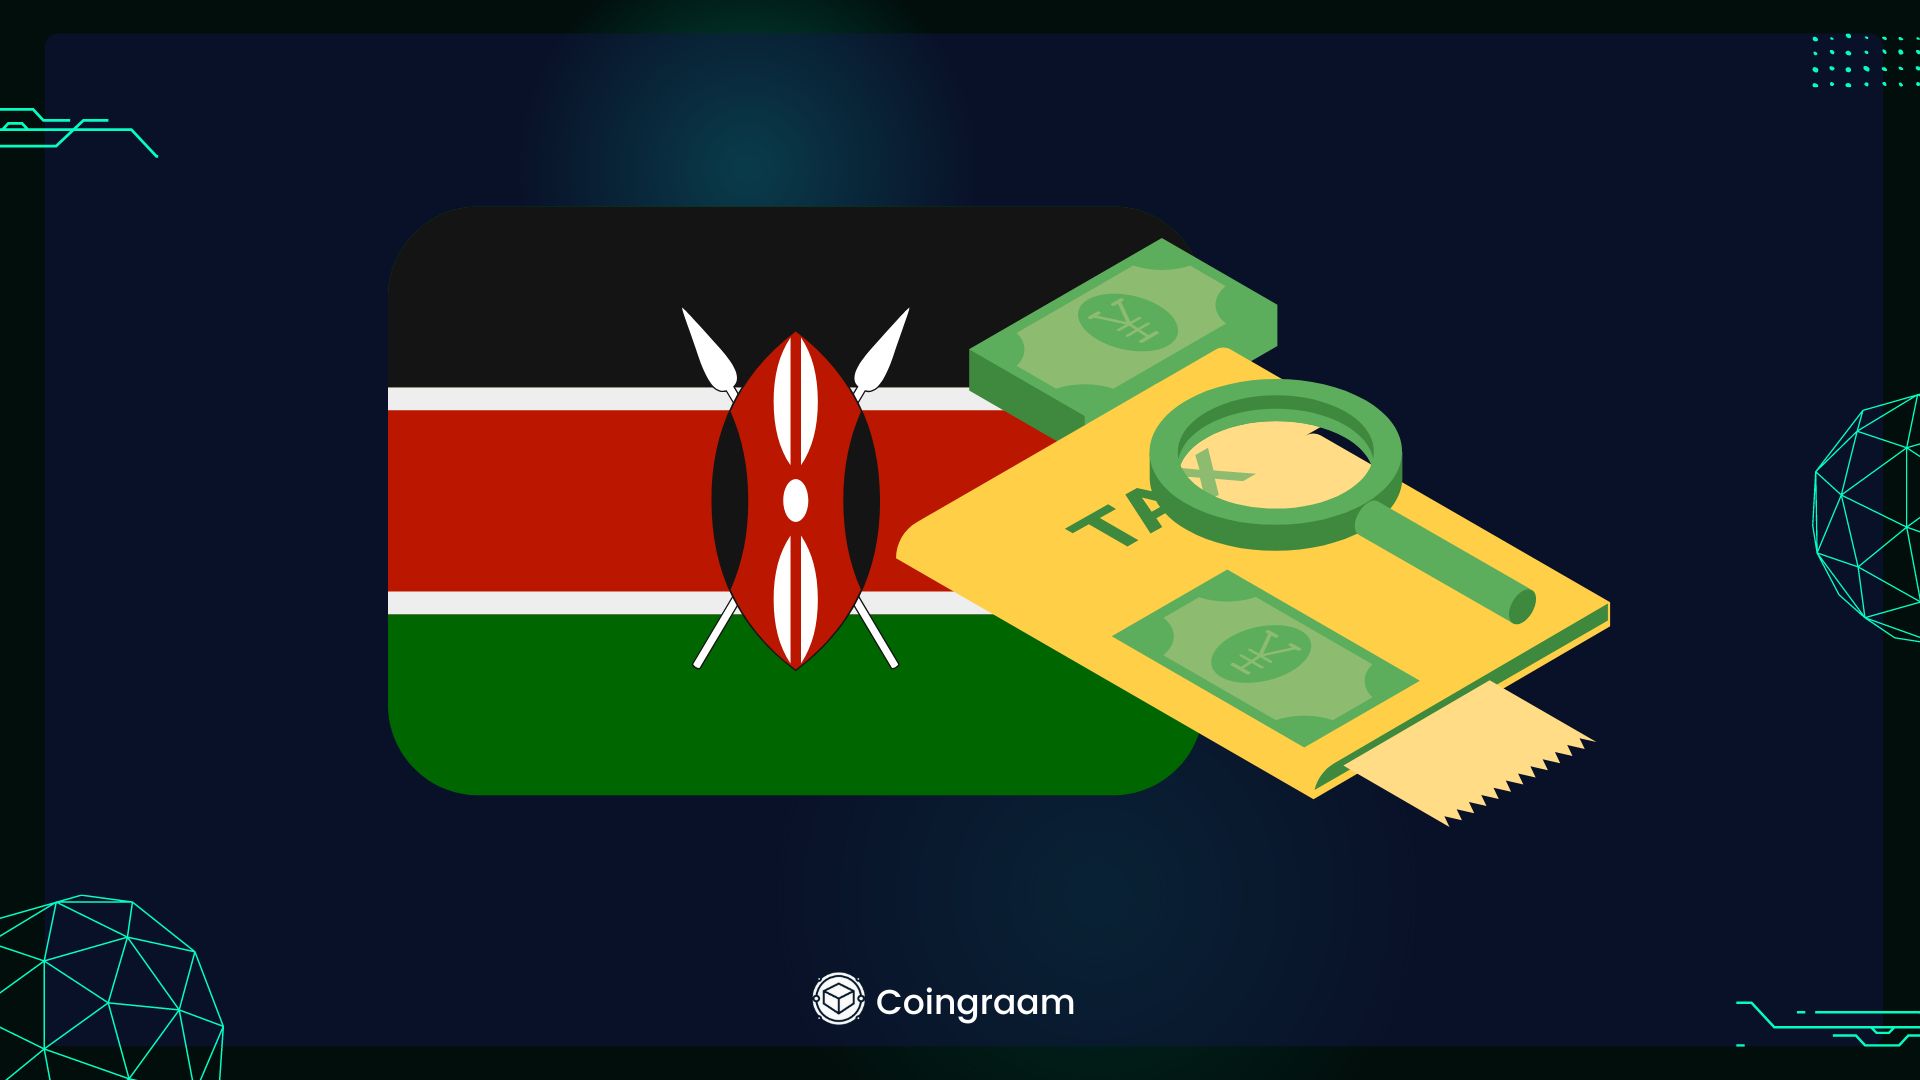   دولت کنیا از نقل‌وانتقالات ارزهای دیجیتال مالیات می‌گیرد

